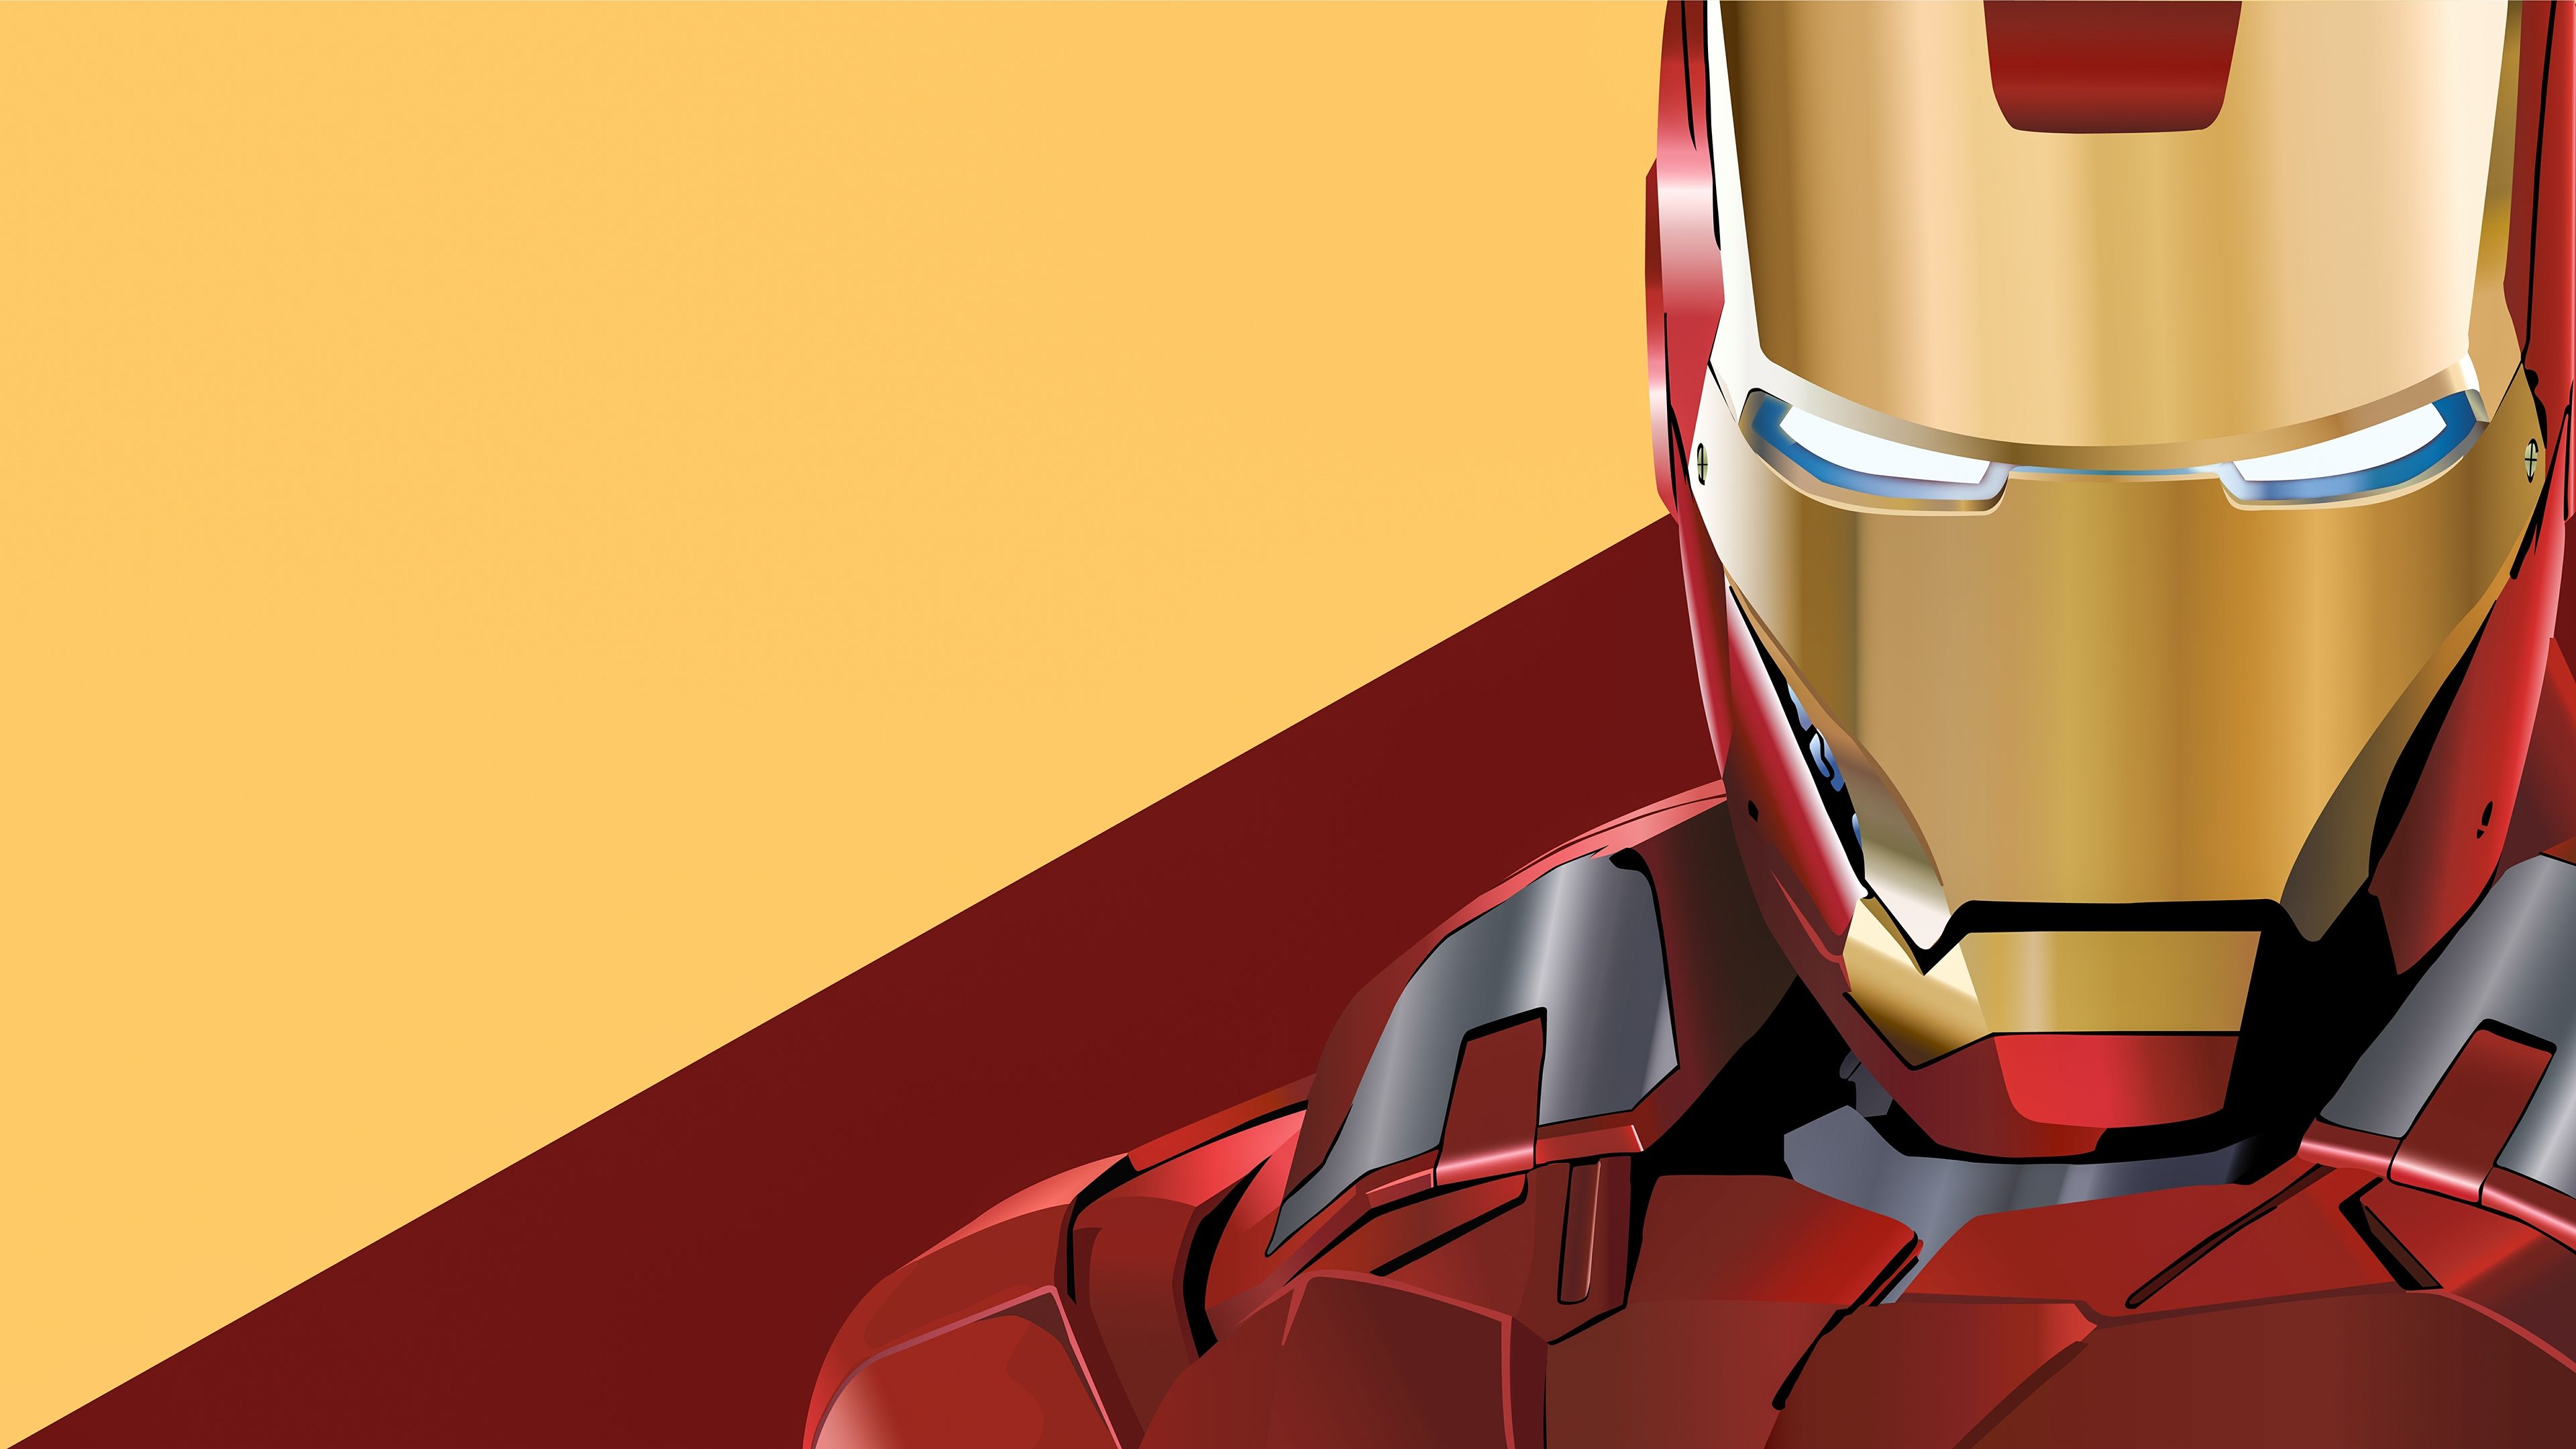 Iron Man Digital Artwork 4k Wallpaper Man Endgame